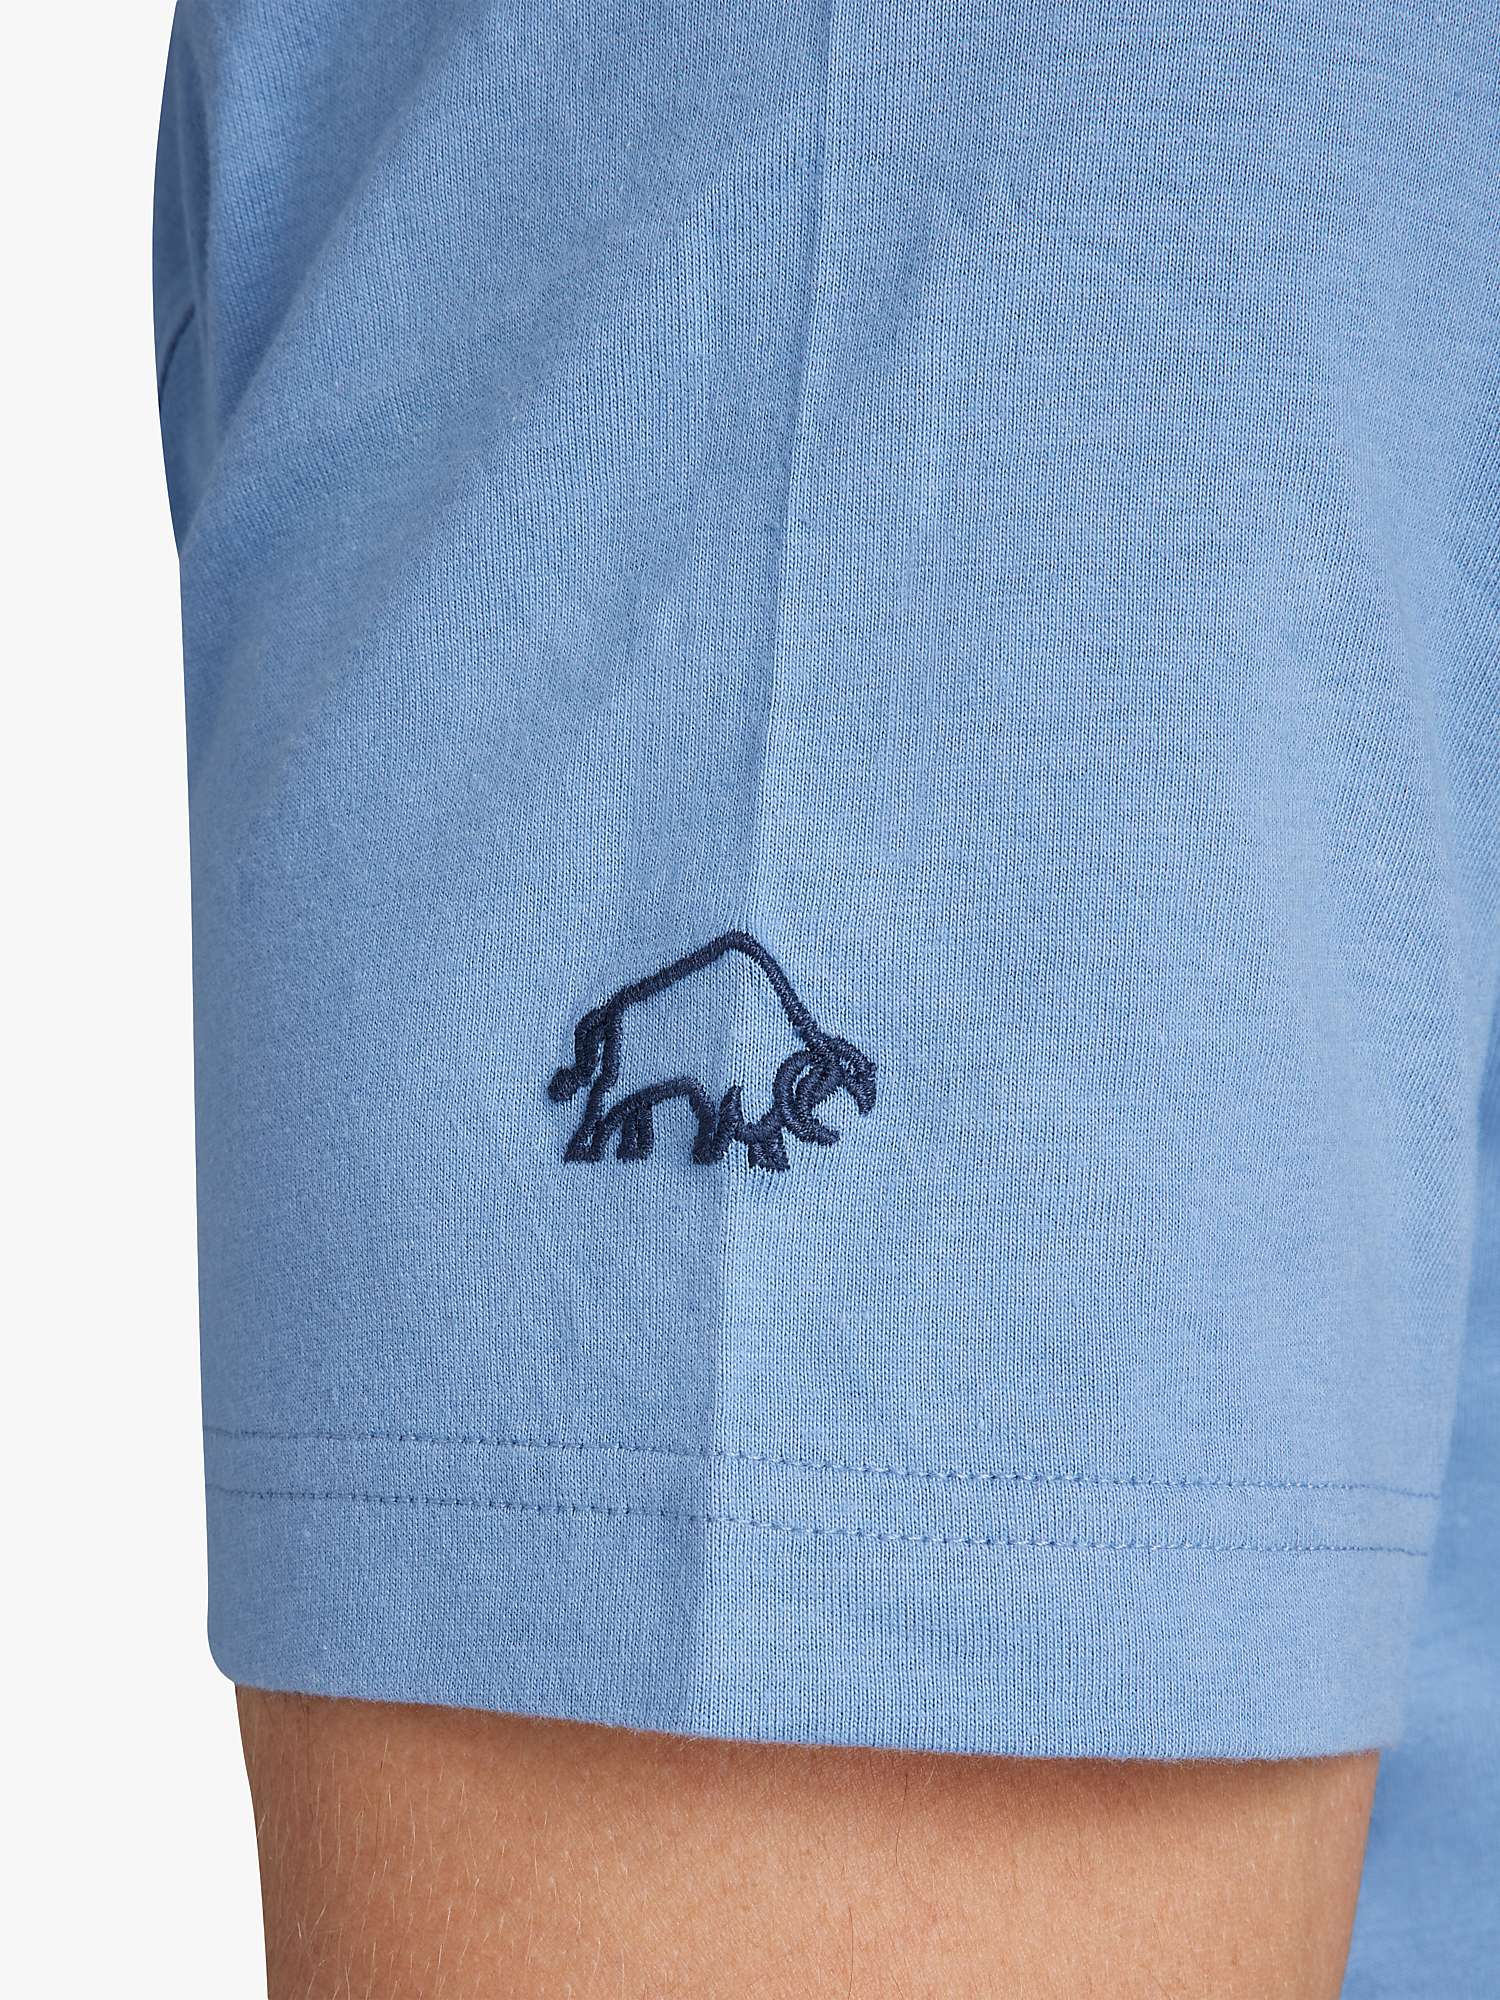 Buy Raging Bull Denim Bull T-Shirt, Chambray Online at johnlewis.com